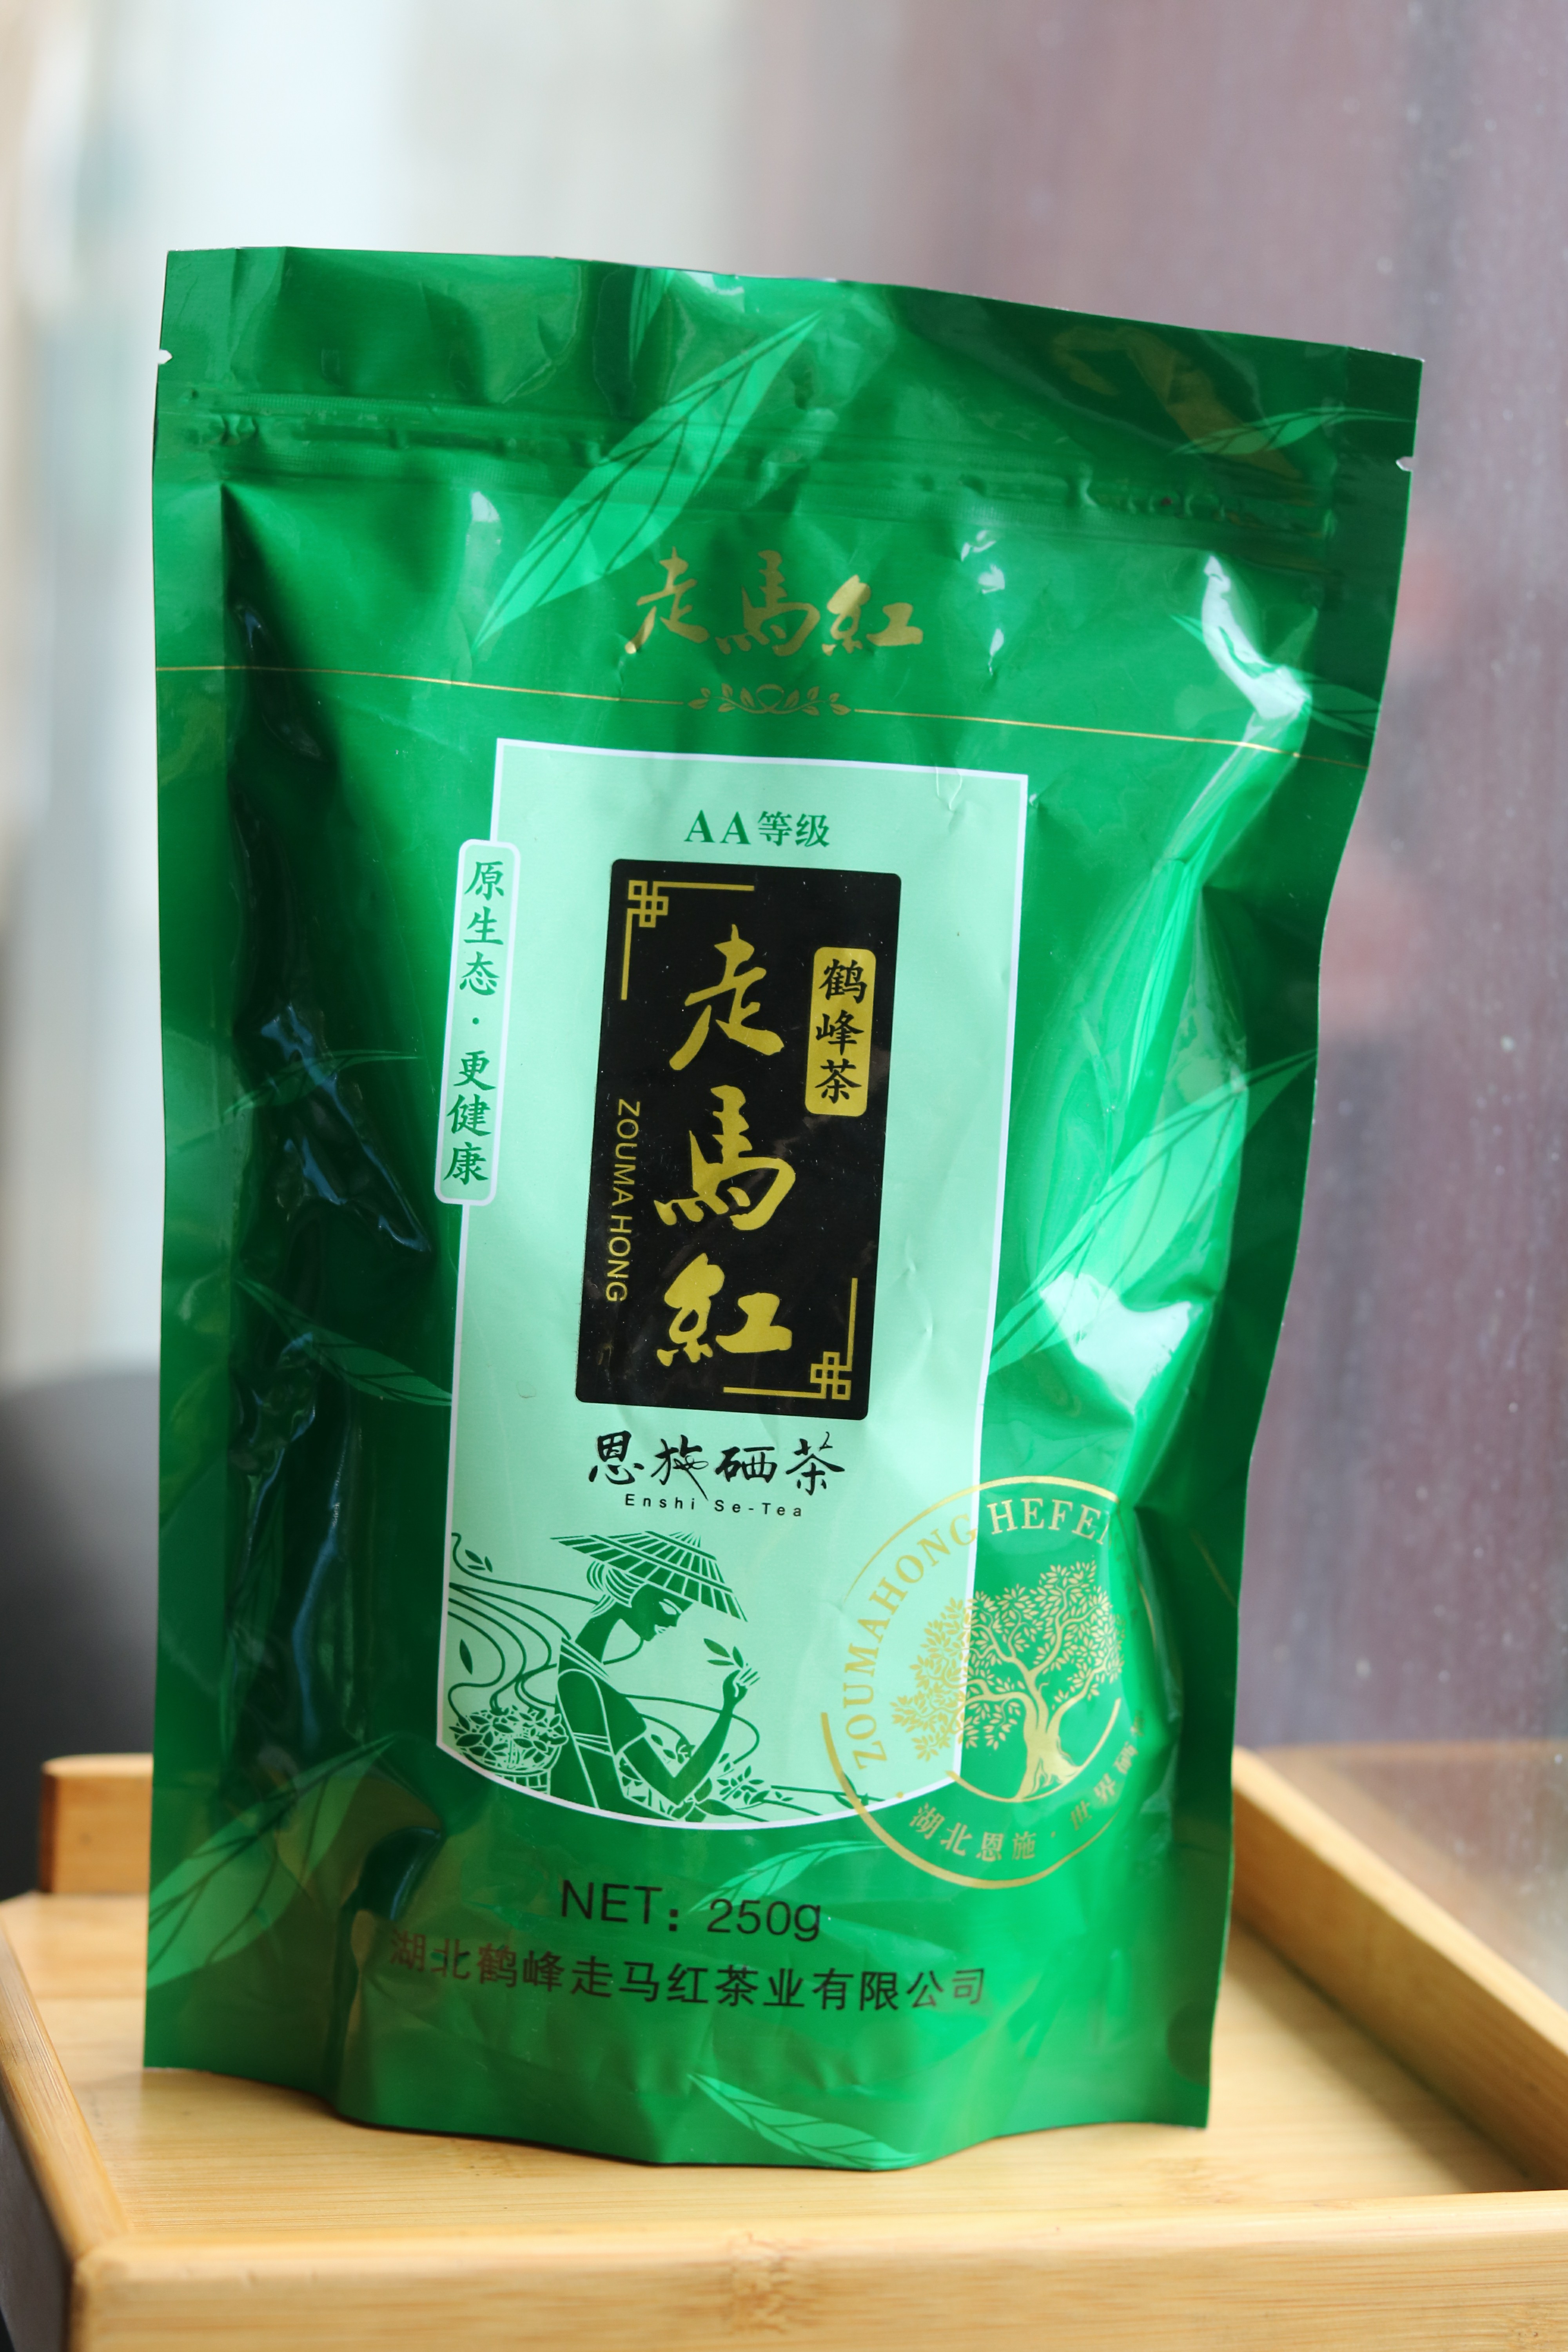 鹤峰富硒绿茶 走马绿茶，AAAA级，*野生绿茶上市 中国古老产茶区之一，贡茶。中国地理标志性产品，恩施富硒特产